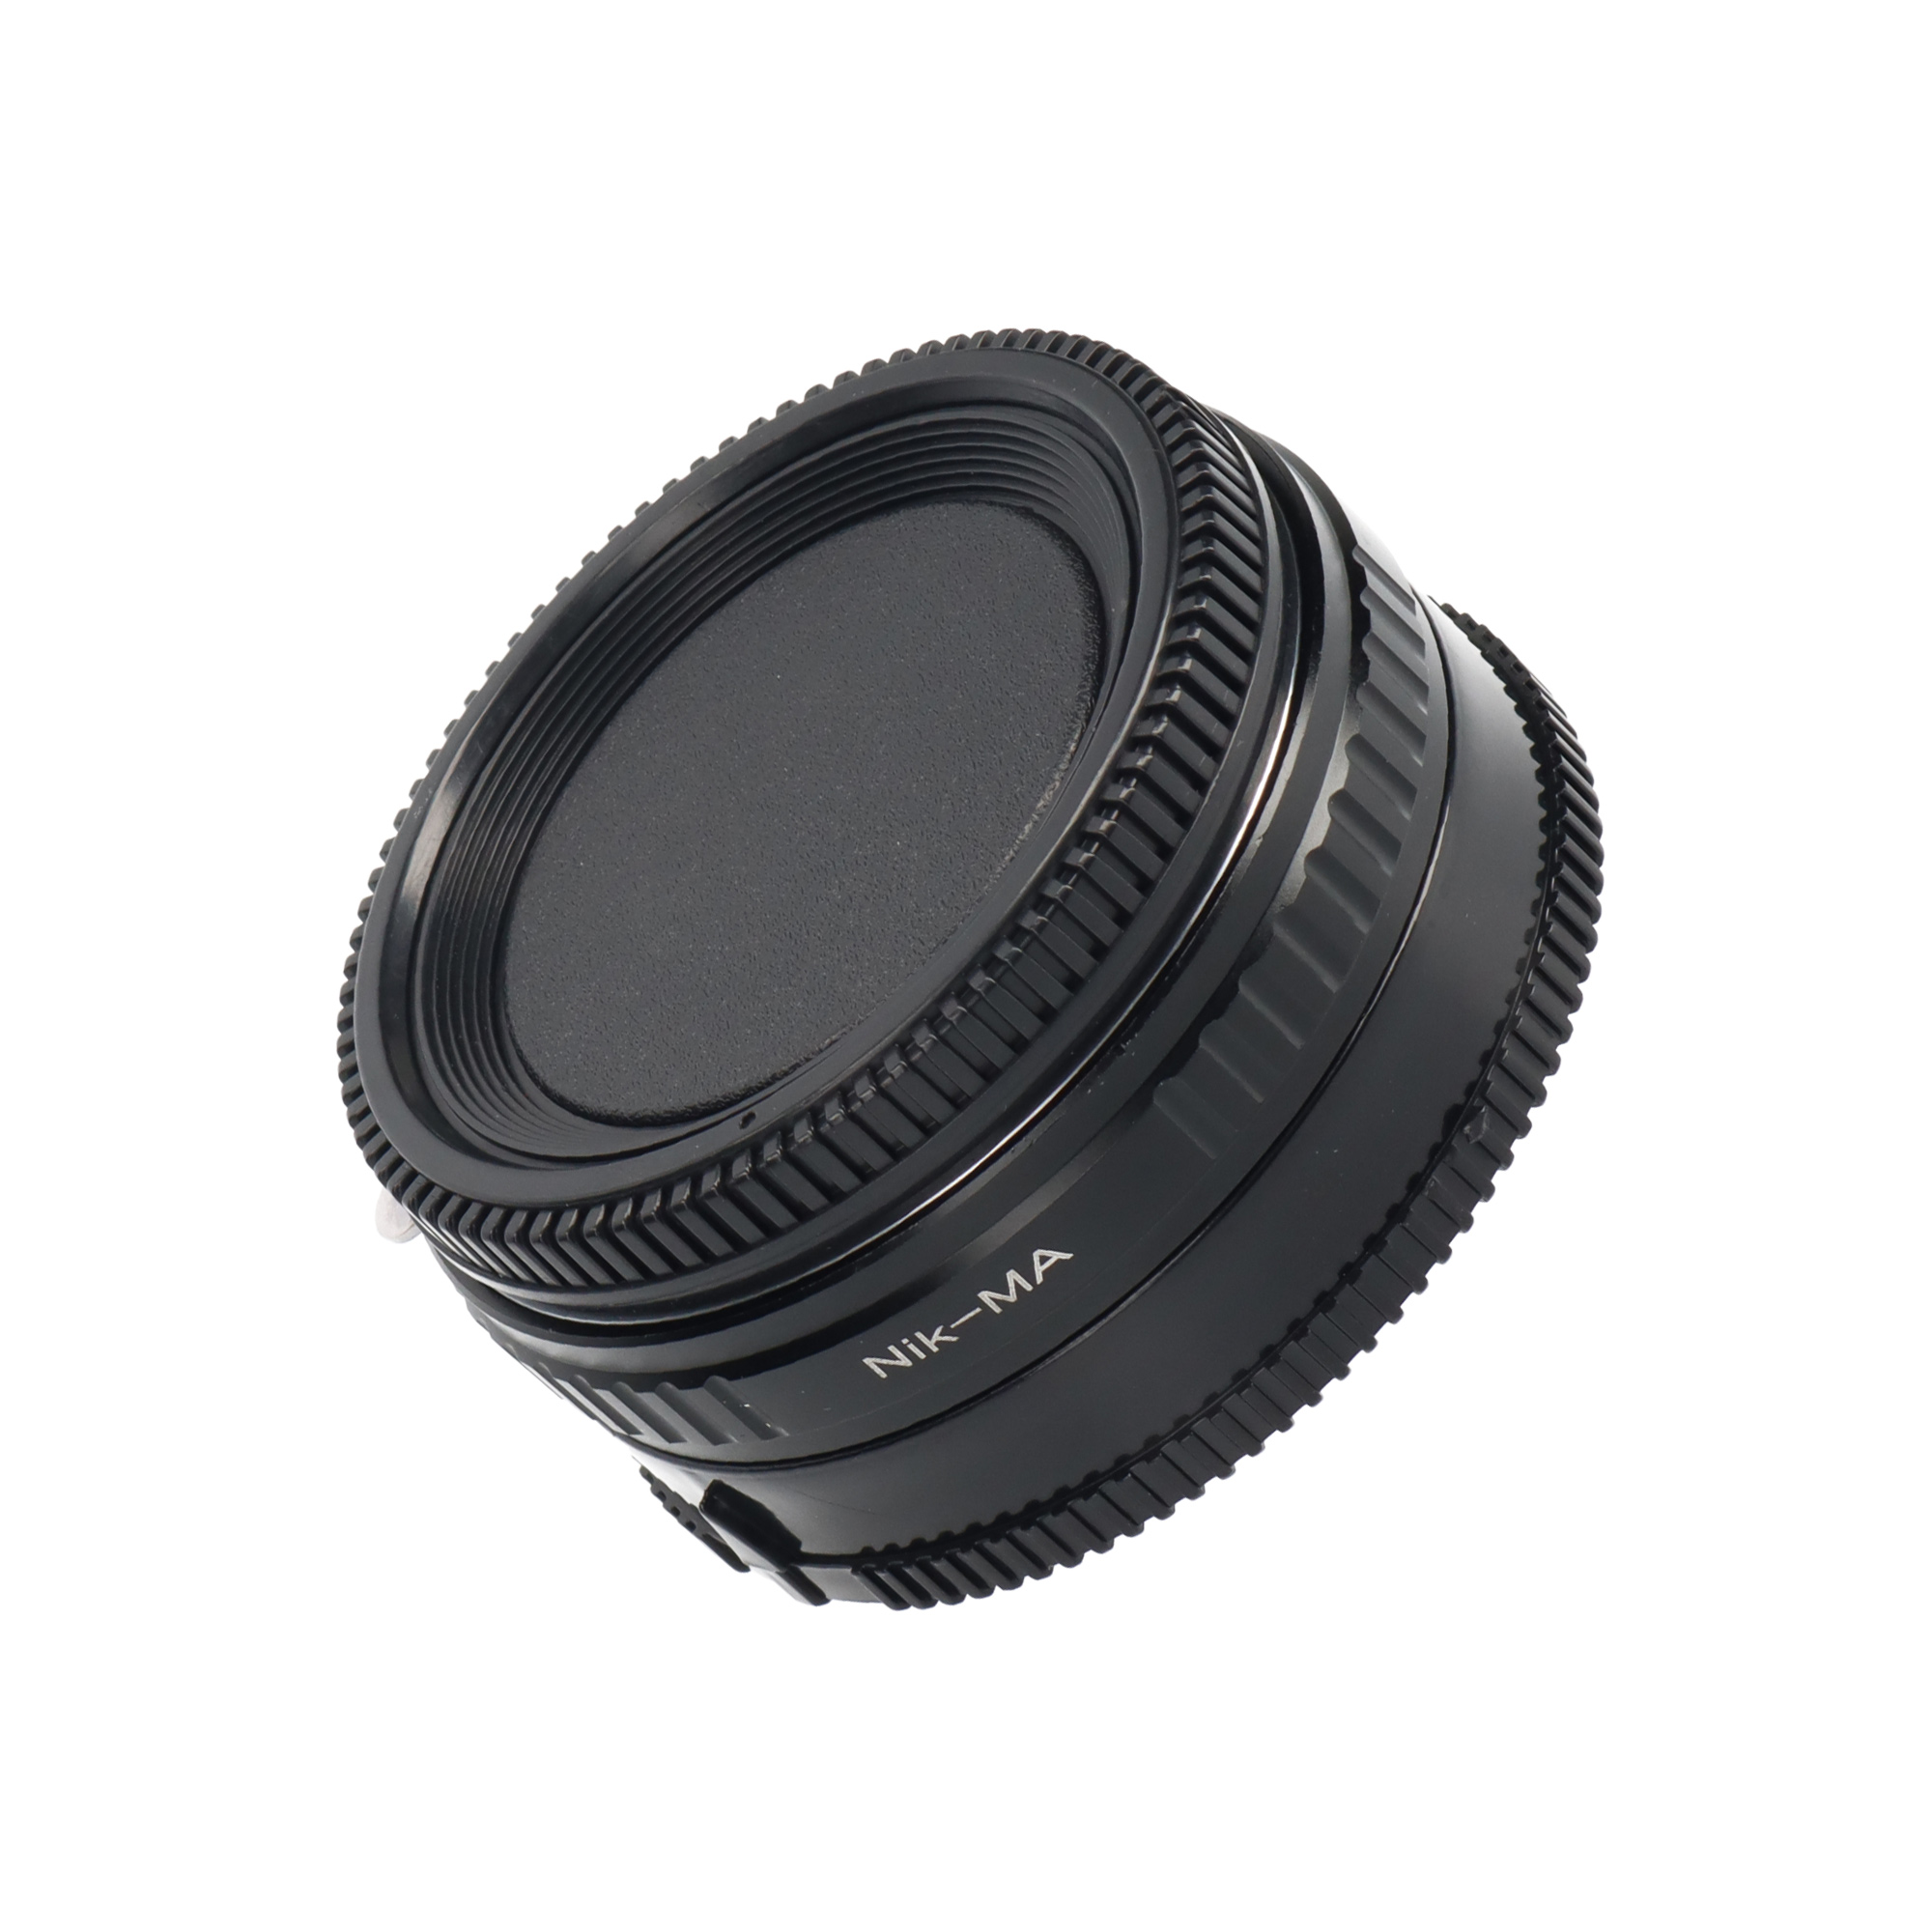 Nikon F-Objektive - Sony Alpha Adapter + Korrekturlinse